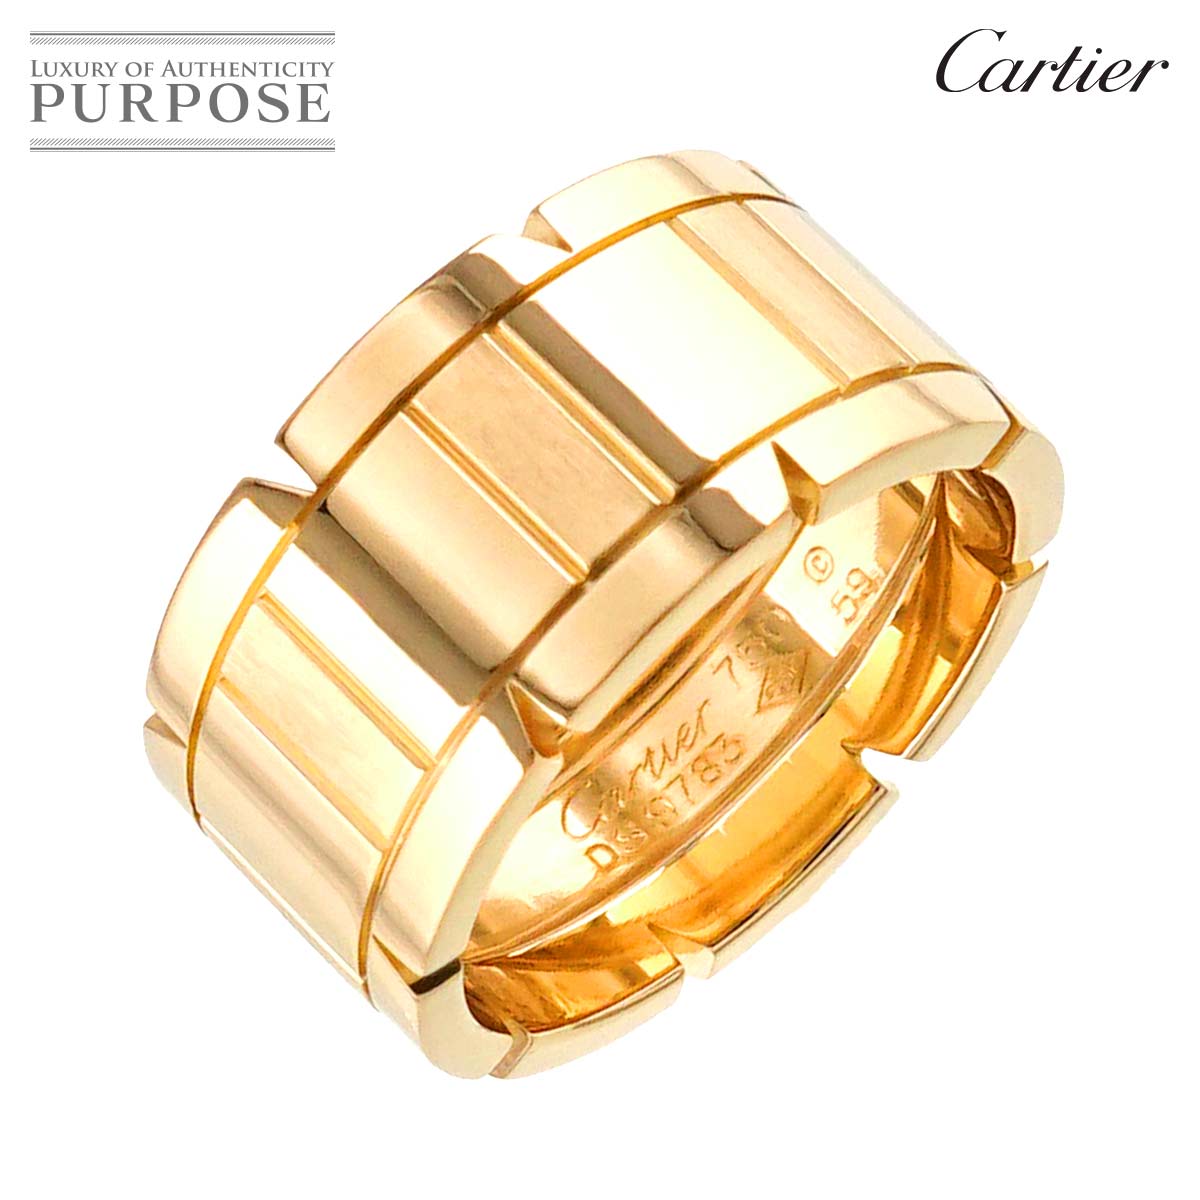  カルティエ Cartier タンクフランセーズ #59 リング K18 YG イエローゴールド 750 指輪 Tank Francaise Ring